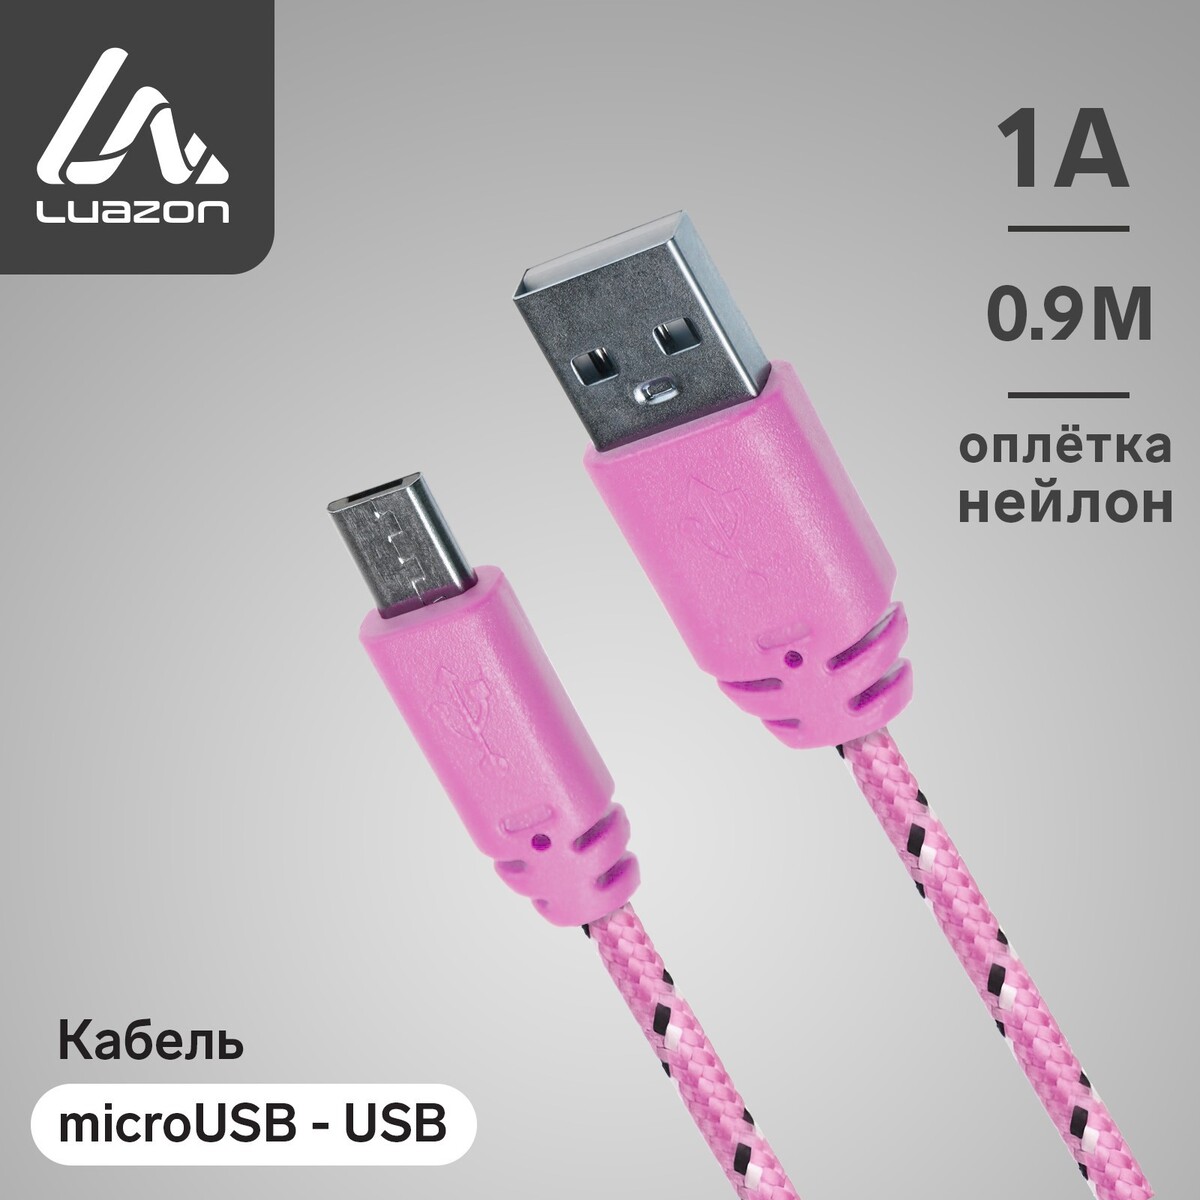 Кабель luazon, microusb - usb, 1 а, 1 м, оплетка нейлон, розовый